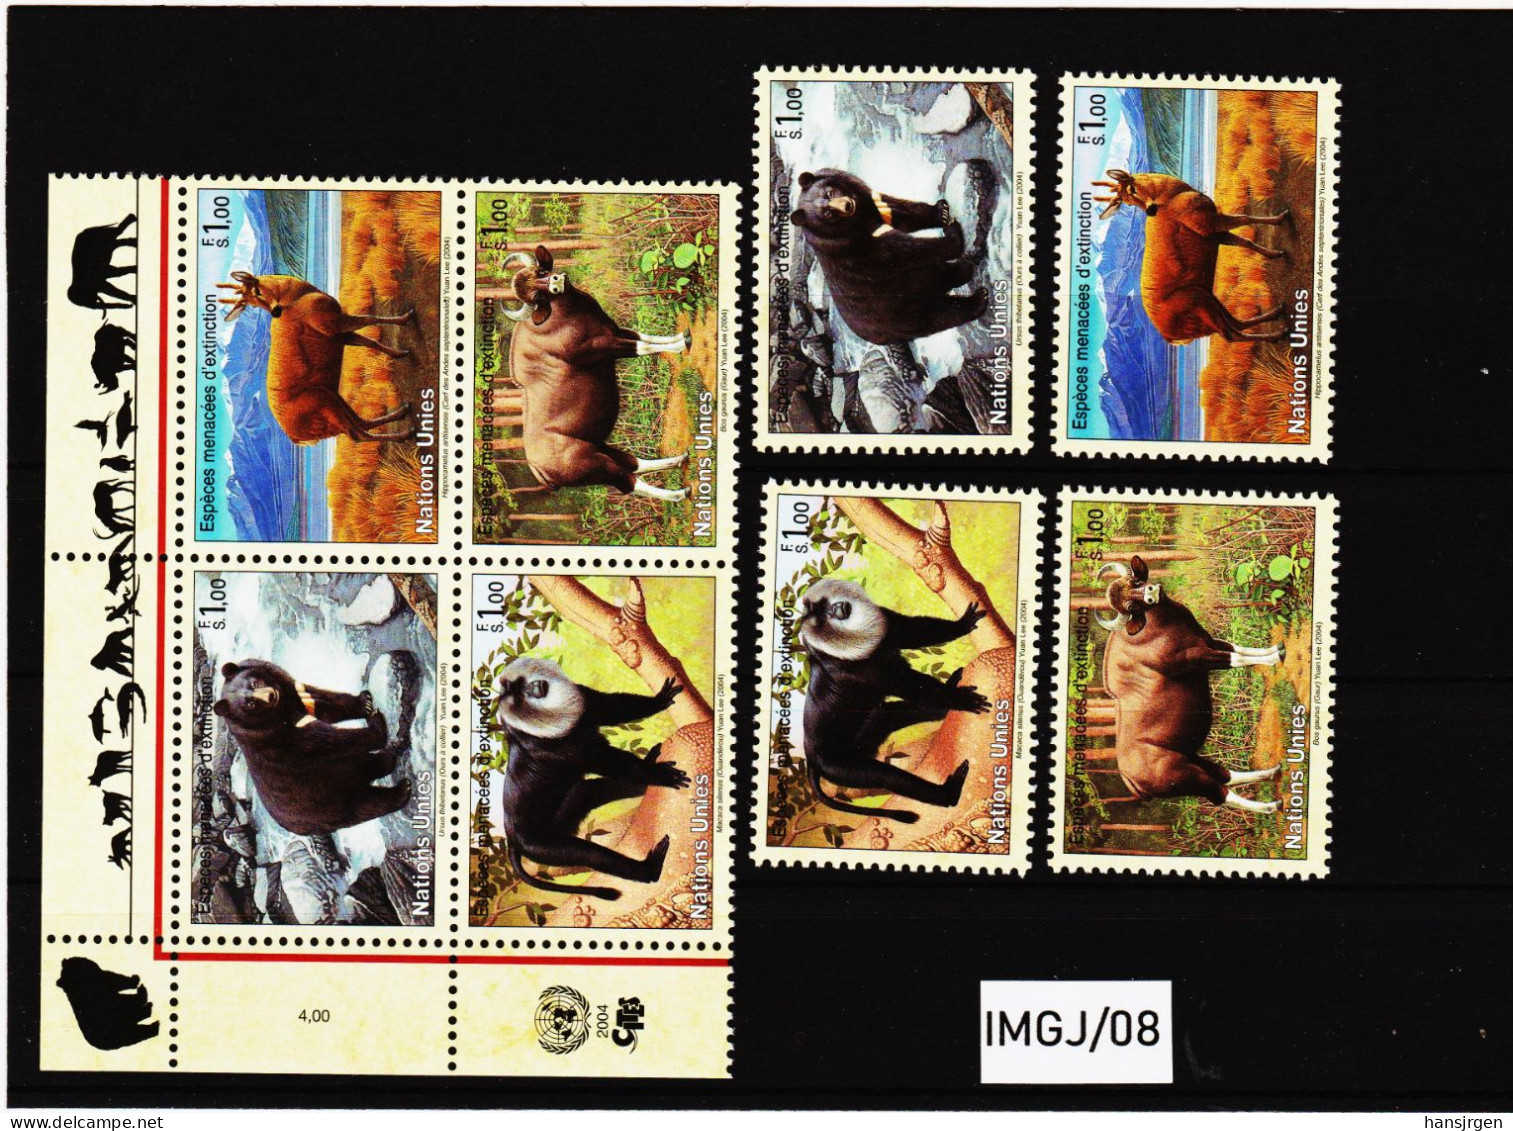 IMGJ/08 UNO GENF 2004 MICHL  482/85  Postfrisch ** SIEHE ABBILDUNG - Unused Stamps